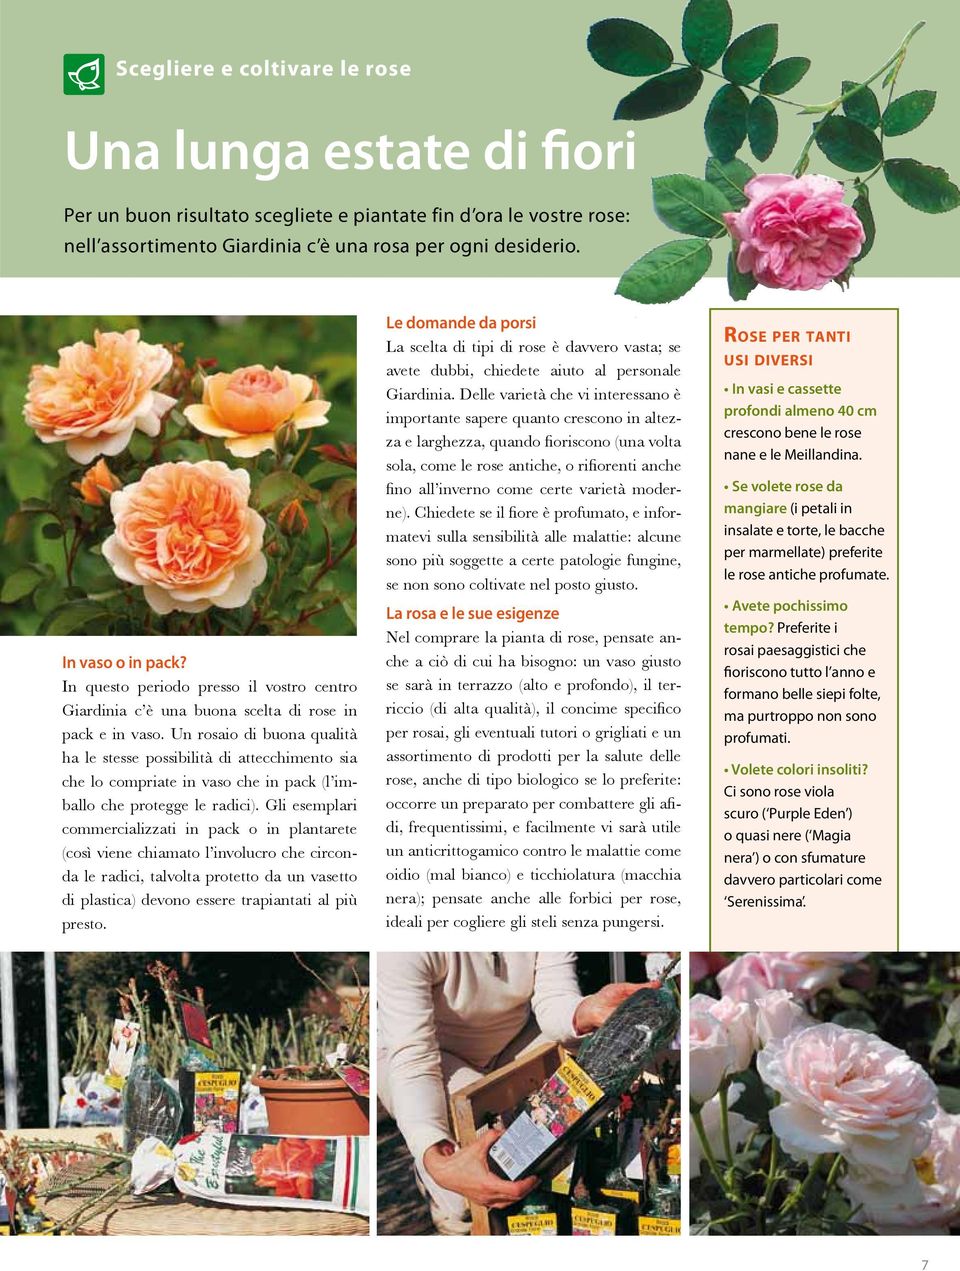 Un rosaio di buona qualità ha le stesse possibilità di attecchimento sia che lo compriate in vaso che in pack (l imballo che protegge le radici).